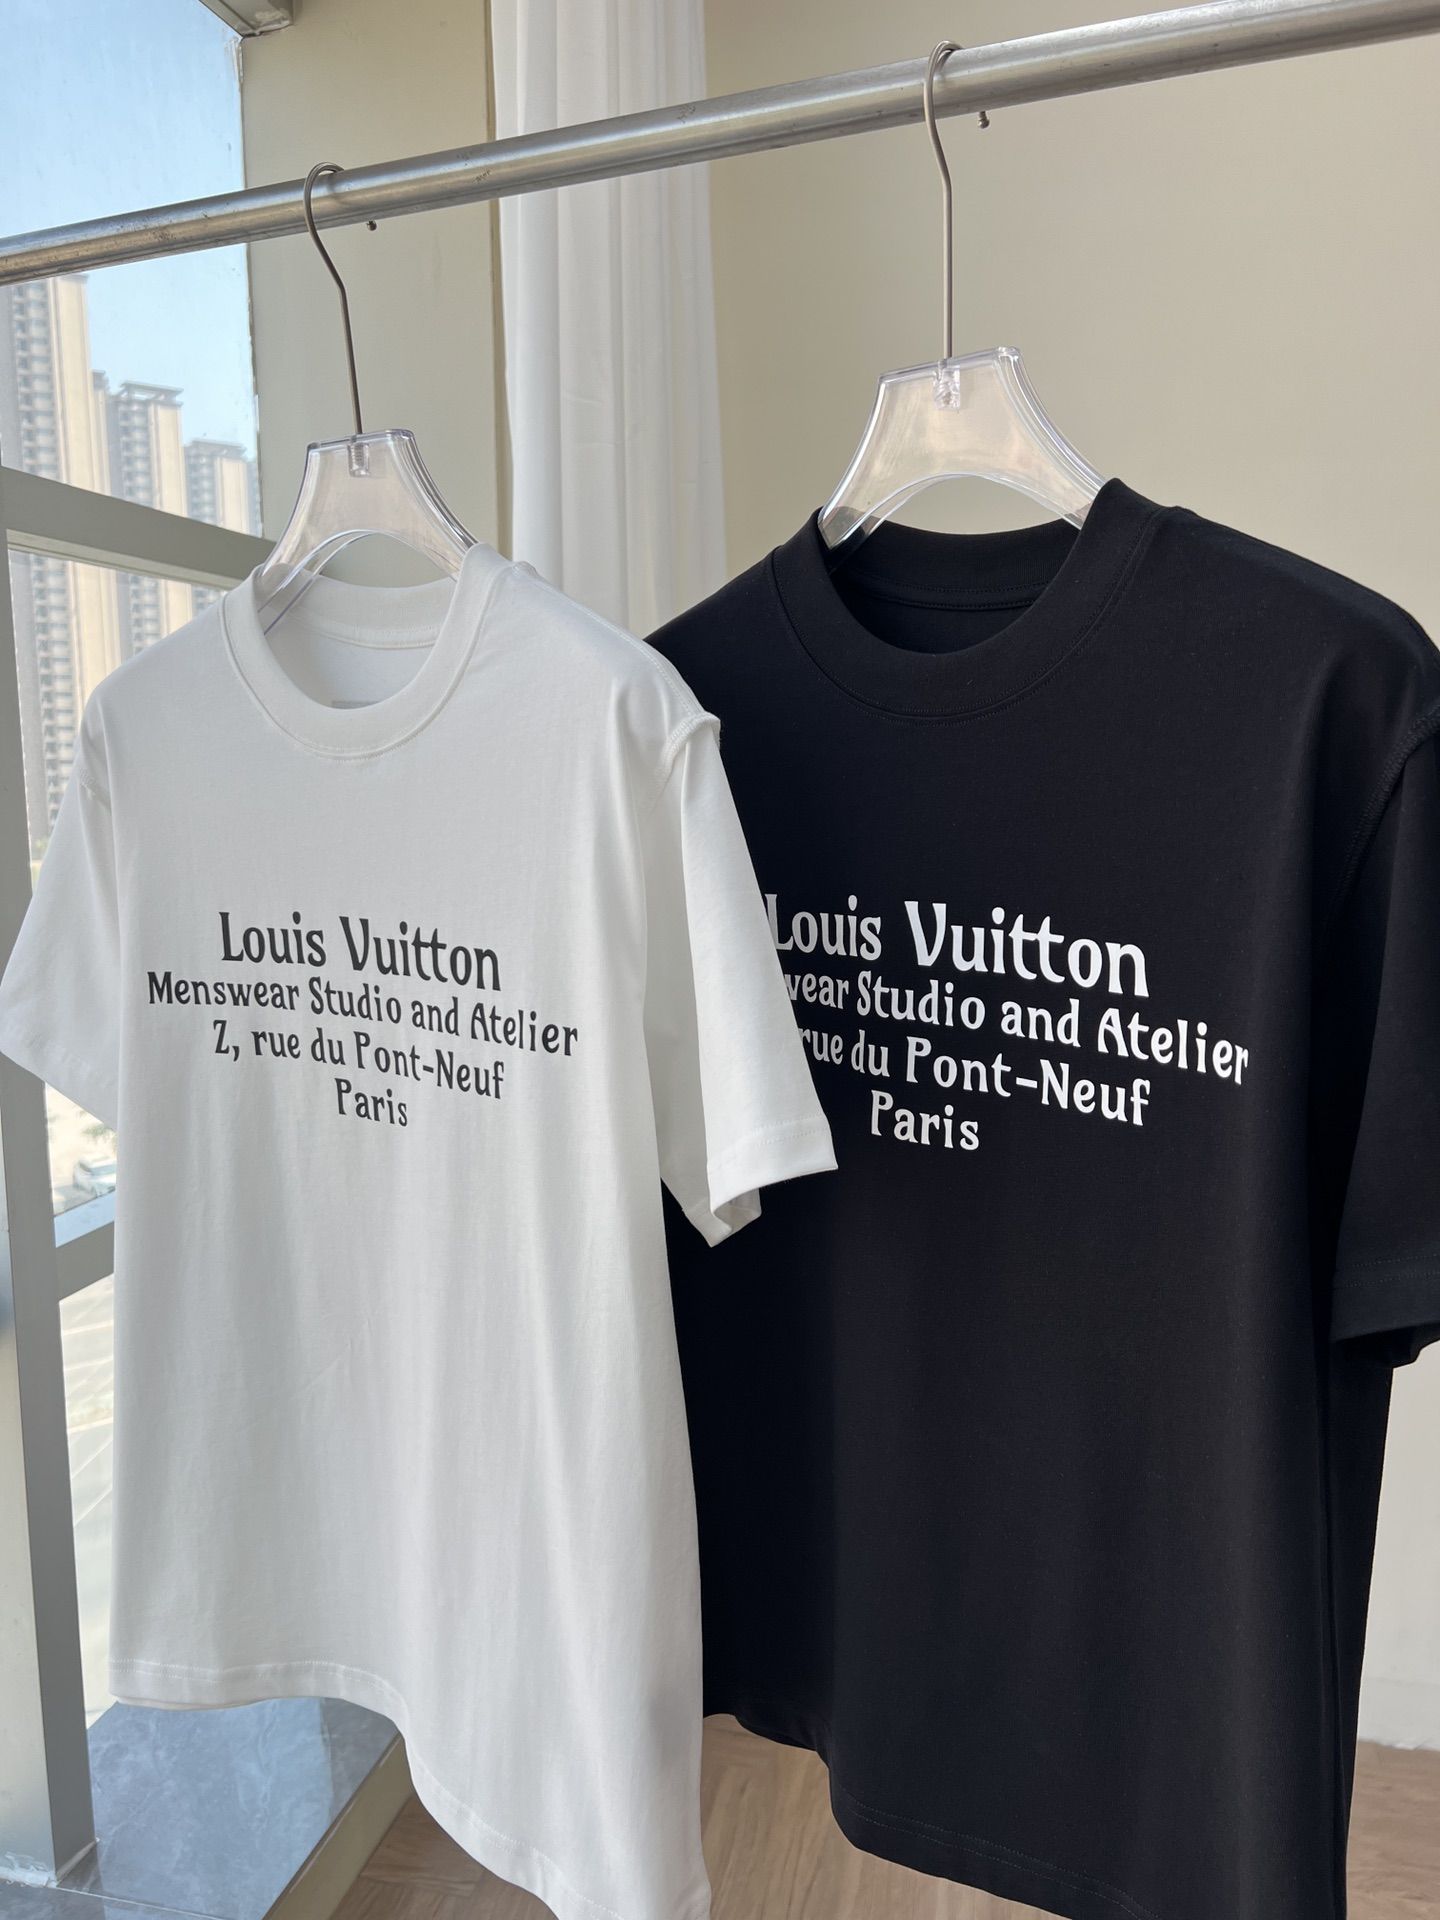 Authentic LOUIS VUITTON Tshirt #241-003-308-1439